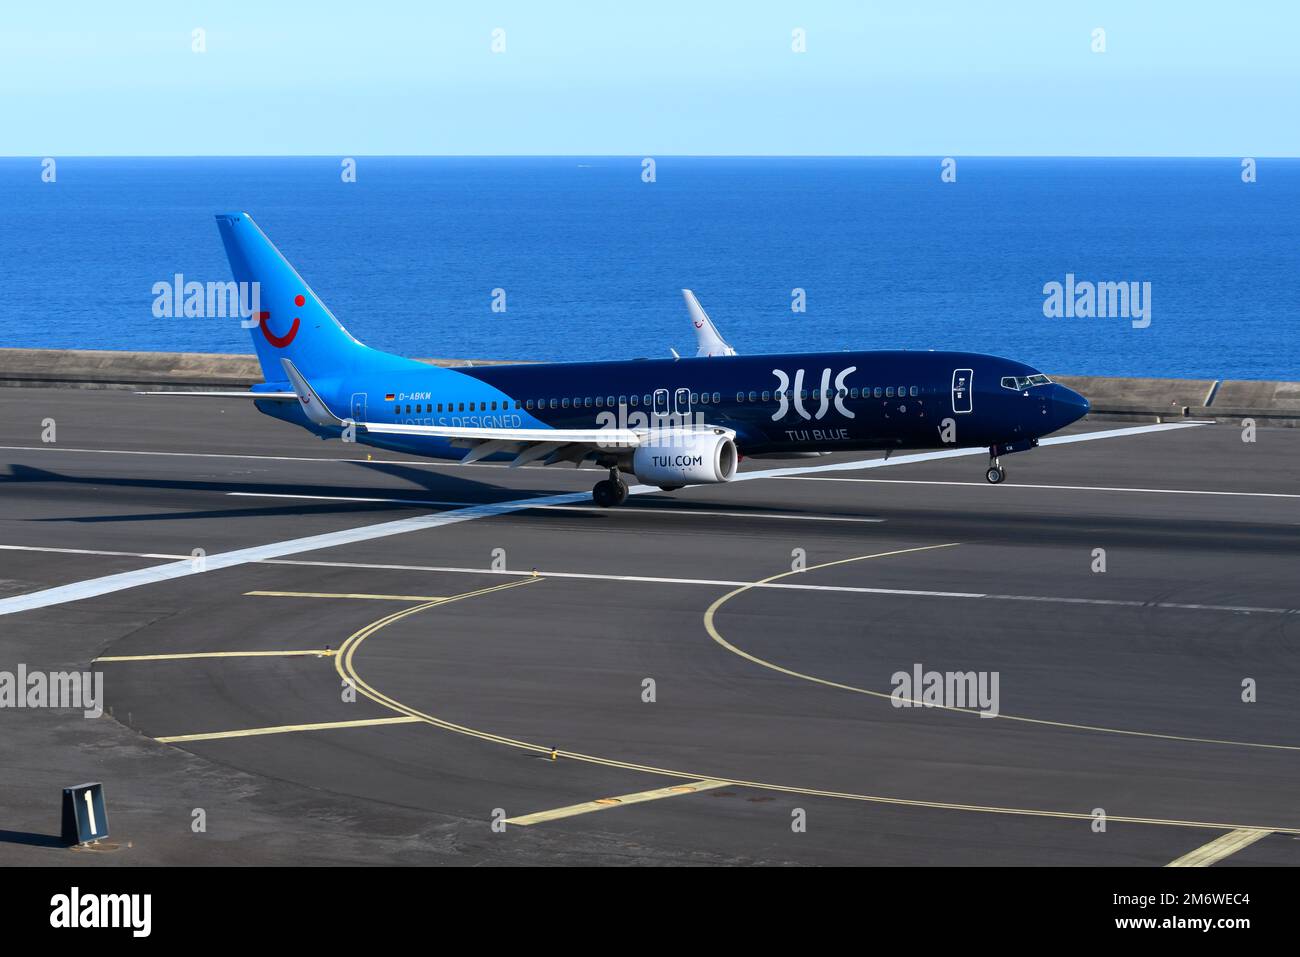 TUI Deutschland Boeing 737 landet mit Seitenwind am Flughafen Madeira. Flugzeug von TUI, Ankunft am Flughafen Funchal mit Seitenwind Turbulenz. Stockfoto